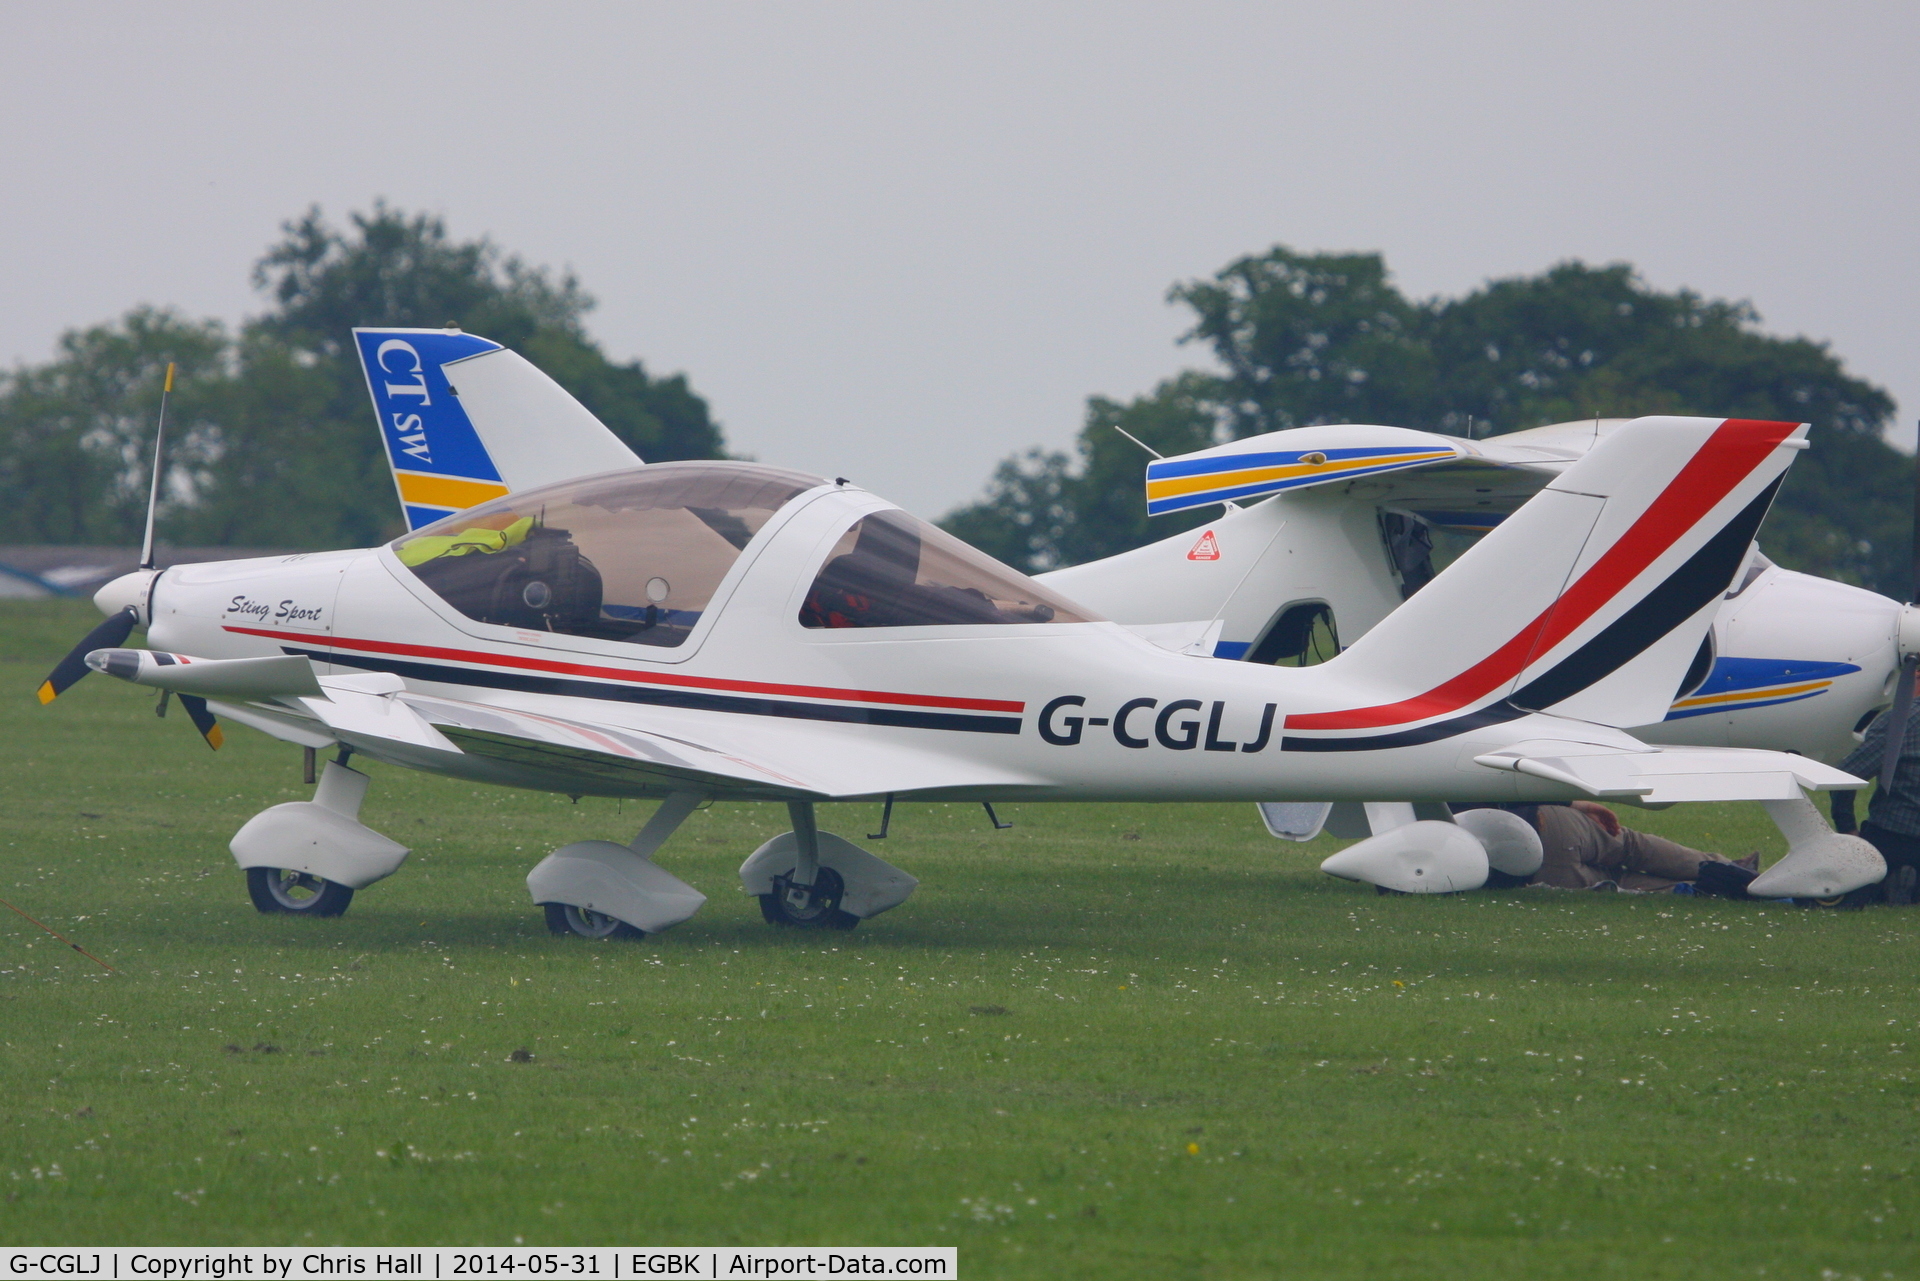 G-CGLJ, 2009 TL Ultralight TL-2000 Sting Carbon C/N LAA 347-14794, at AeroExpo 2014